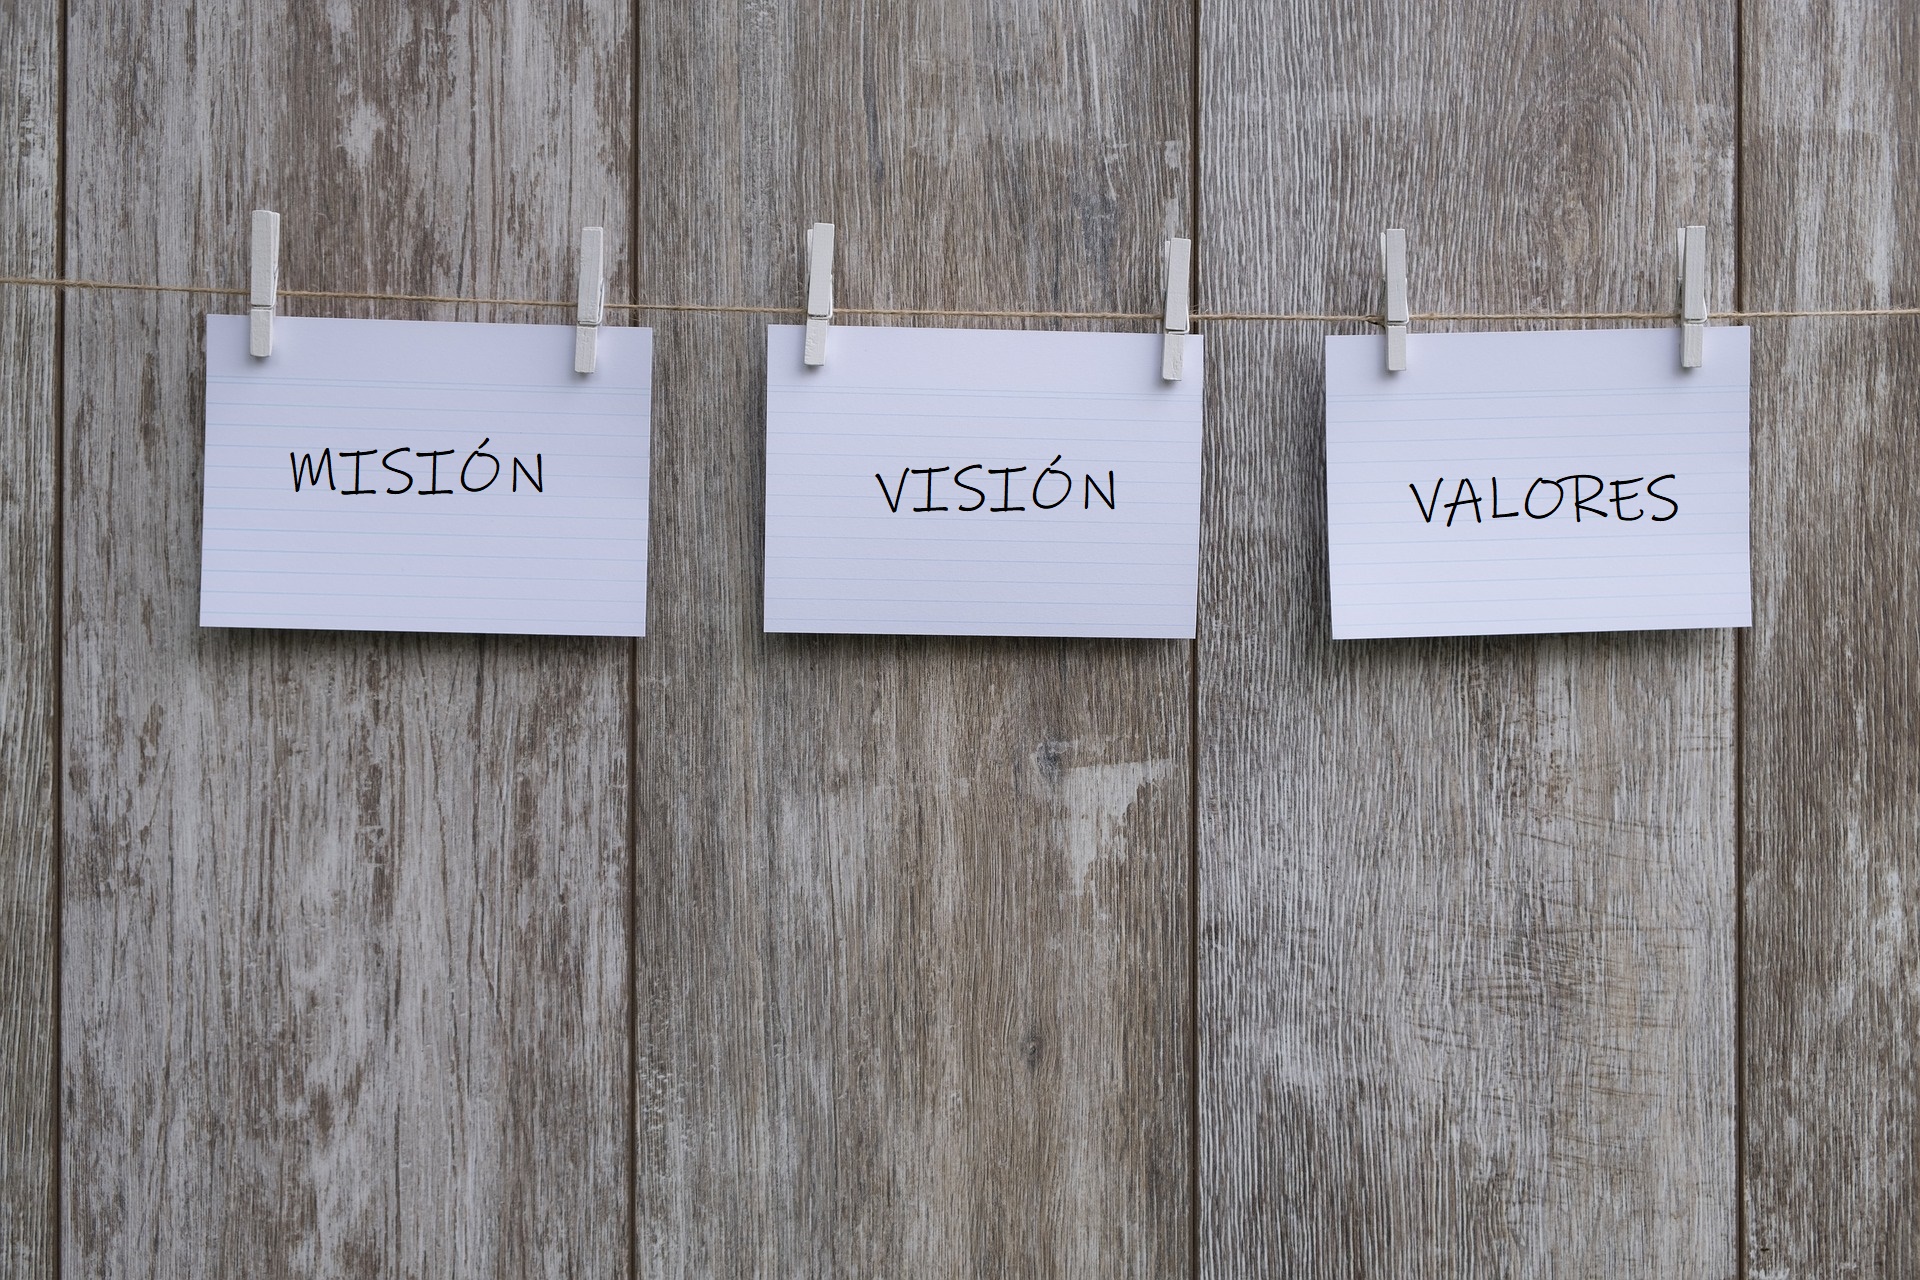 Misión, visión y valores: ¿sirve para algo su definición? -